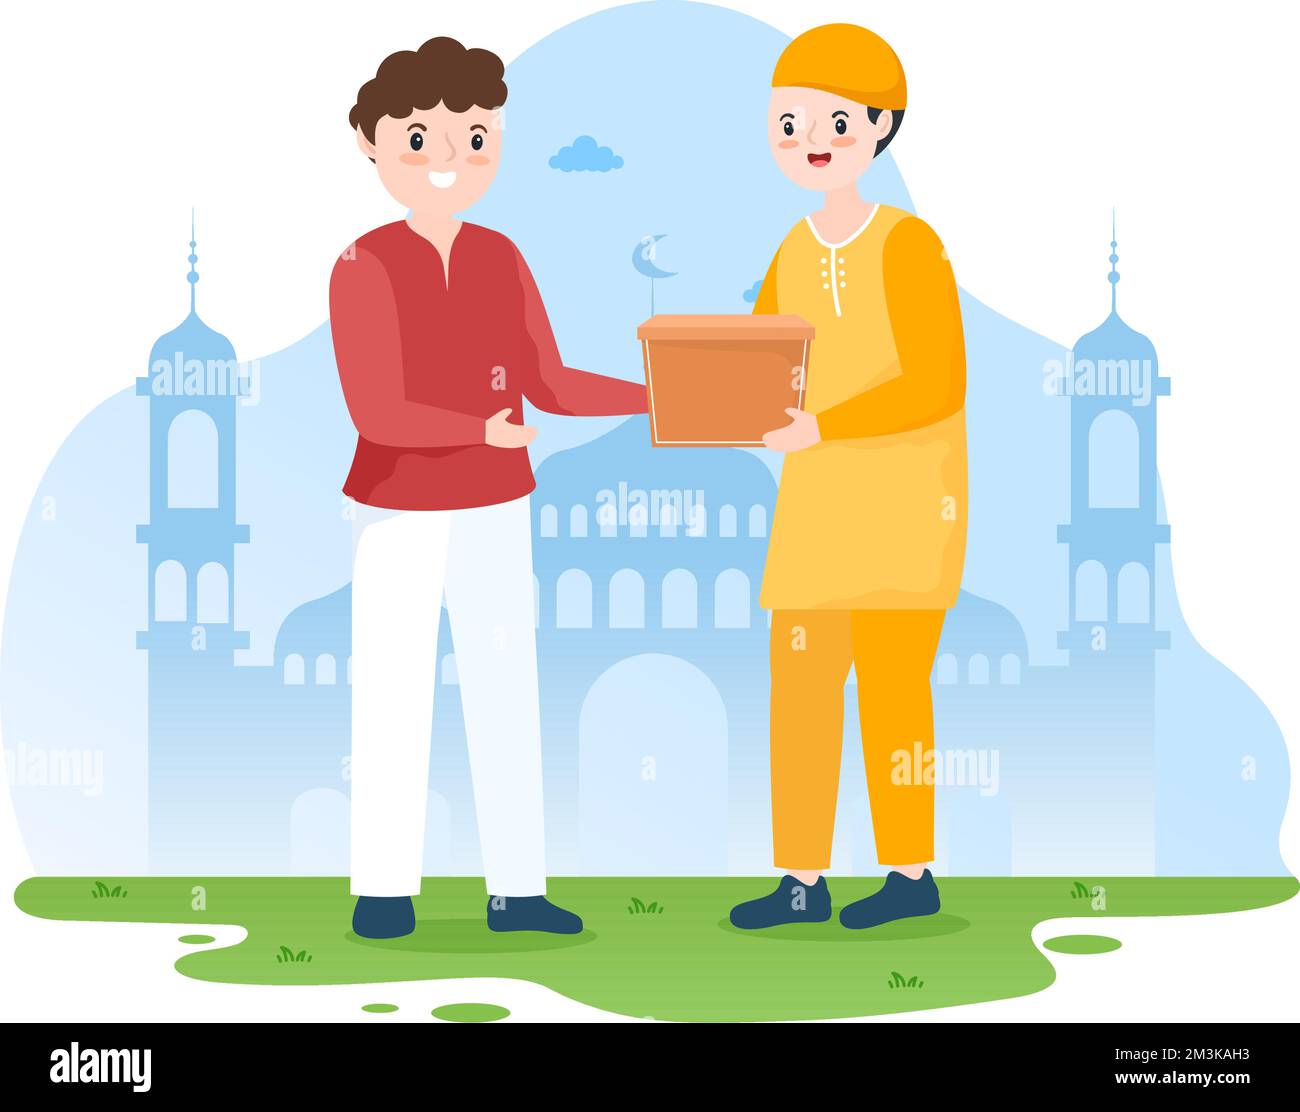 Muslimische Menschen spenden Almosen, Zakat oder Infaq an eine Person, die sie benötigt, in der Abbildung „Flat Cartoon Poster Hand Drawn Templates“ Stock Vektor